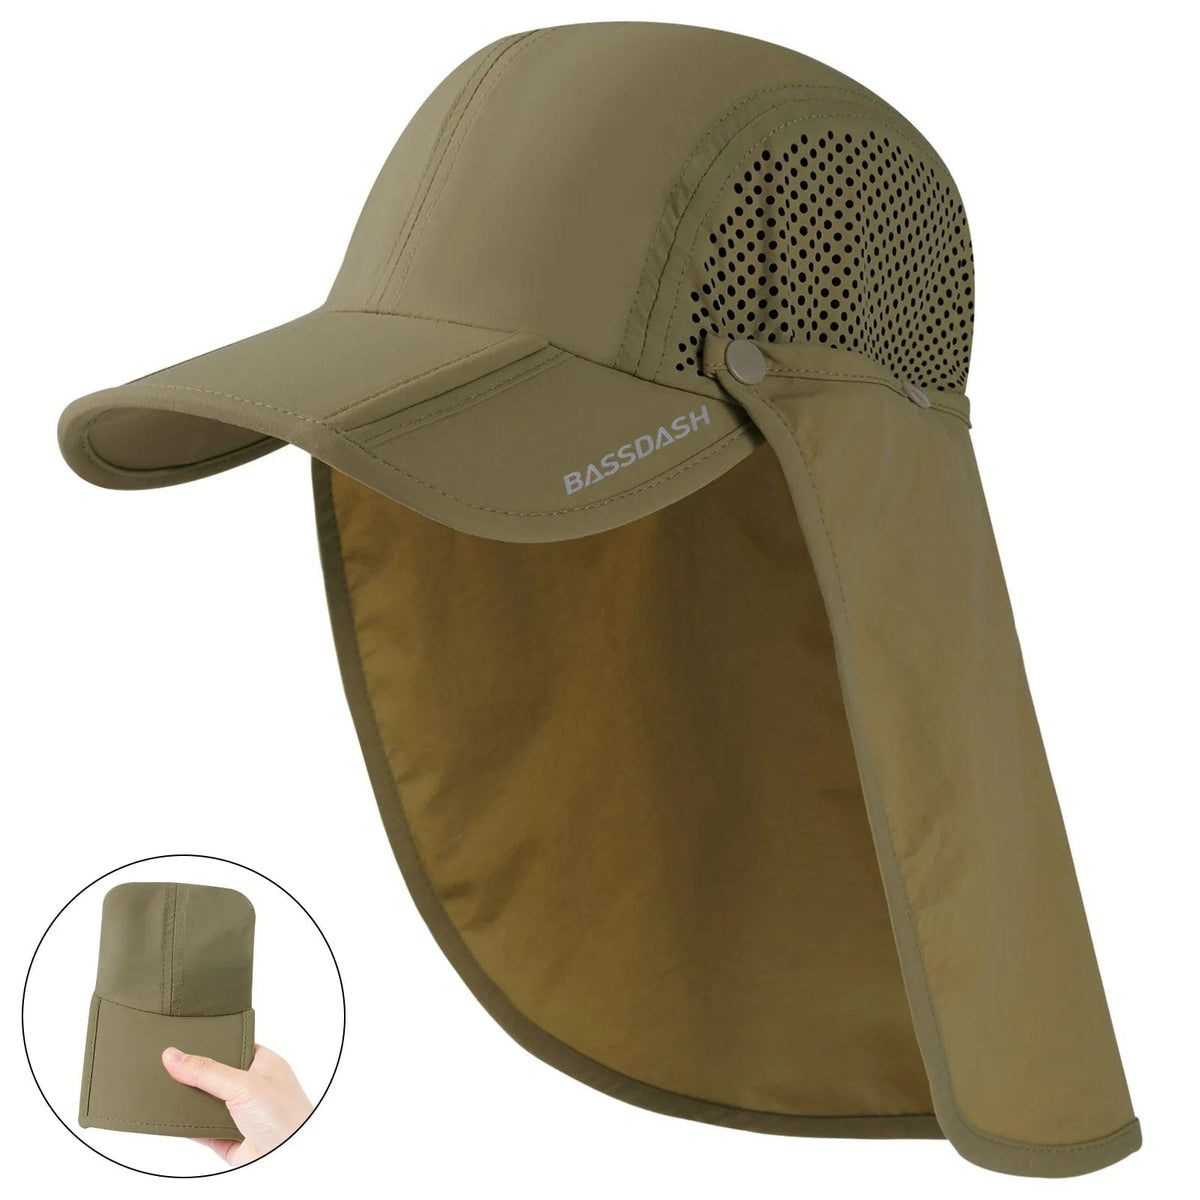 Apparel Bassdash Coolhead Fishing Hat Khaki Foldable Brim Bassdash Coolhead Fishing Hat | Pescador Fishing Supply